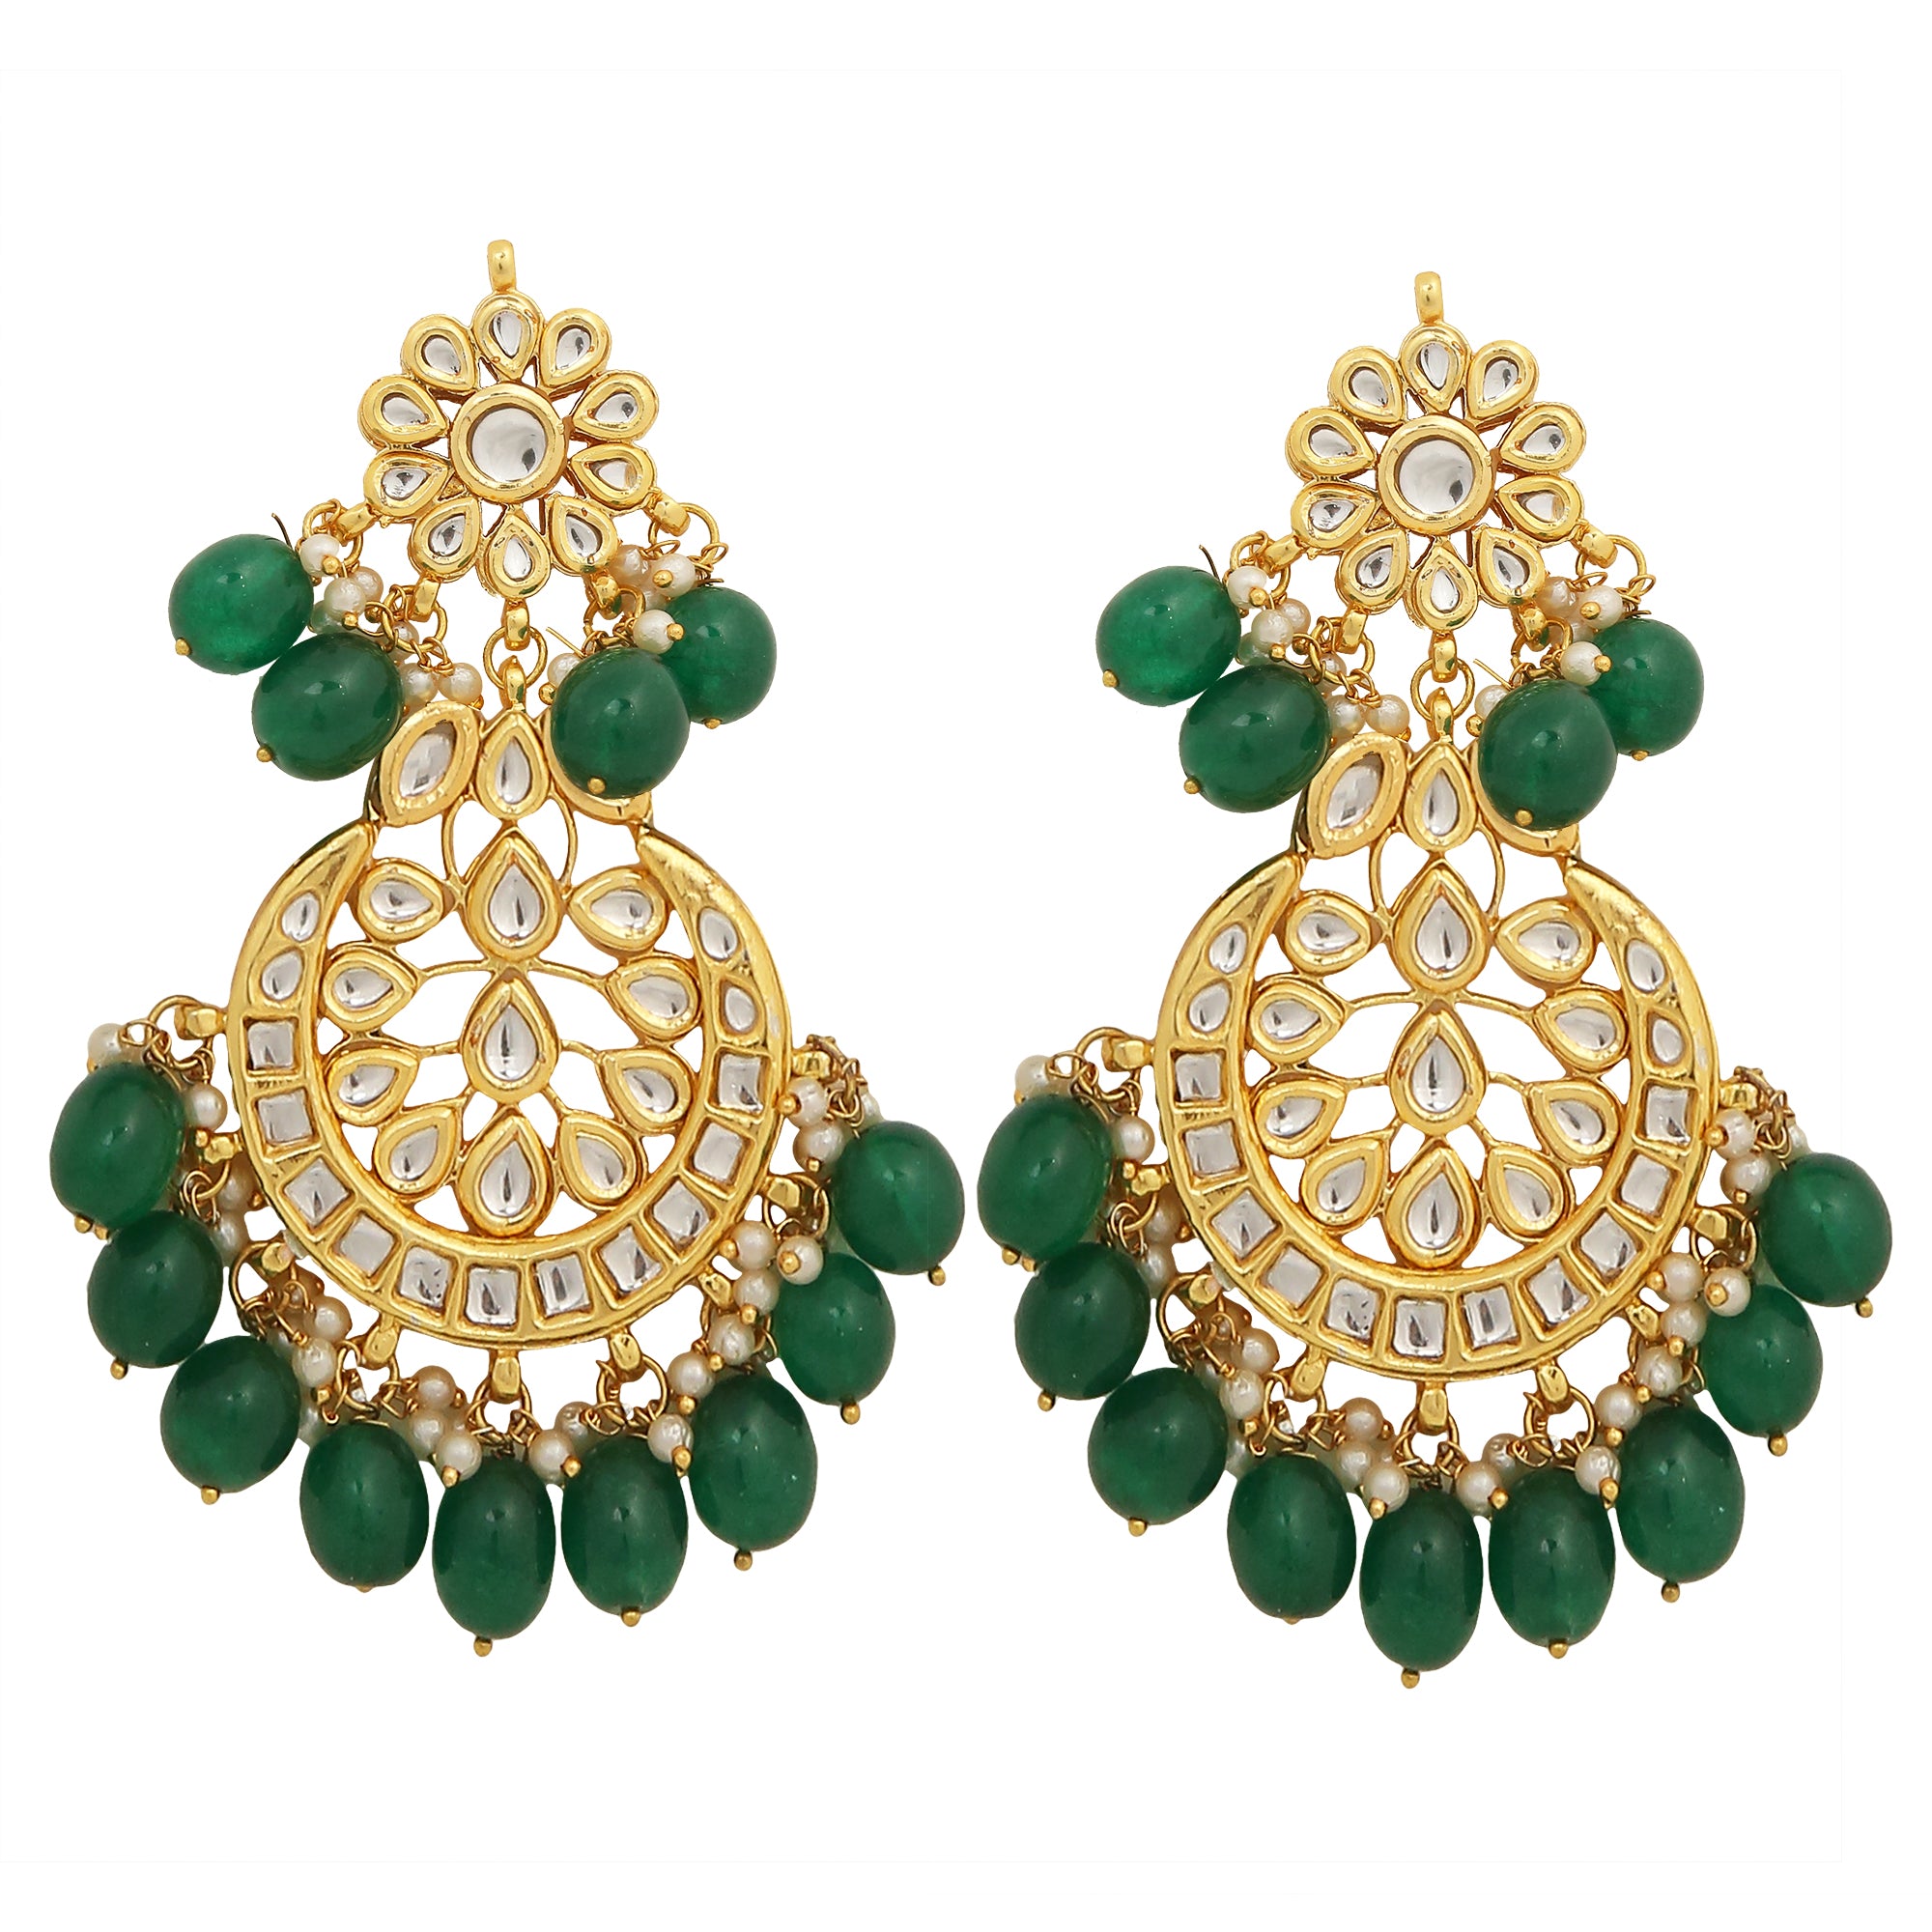 Women's Emerald Beaded Kundan Necklace Set With Earrings - Femizen